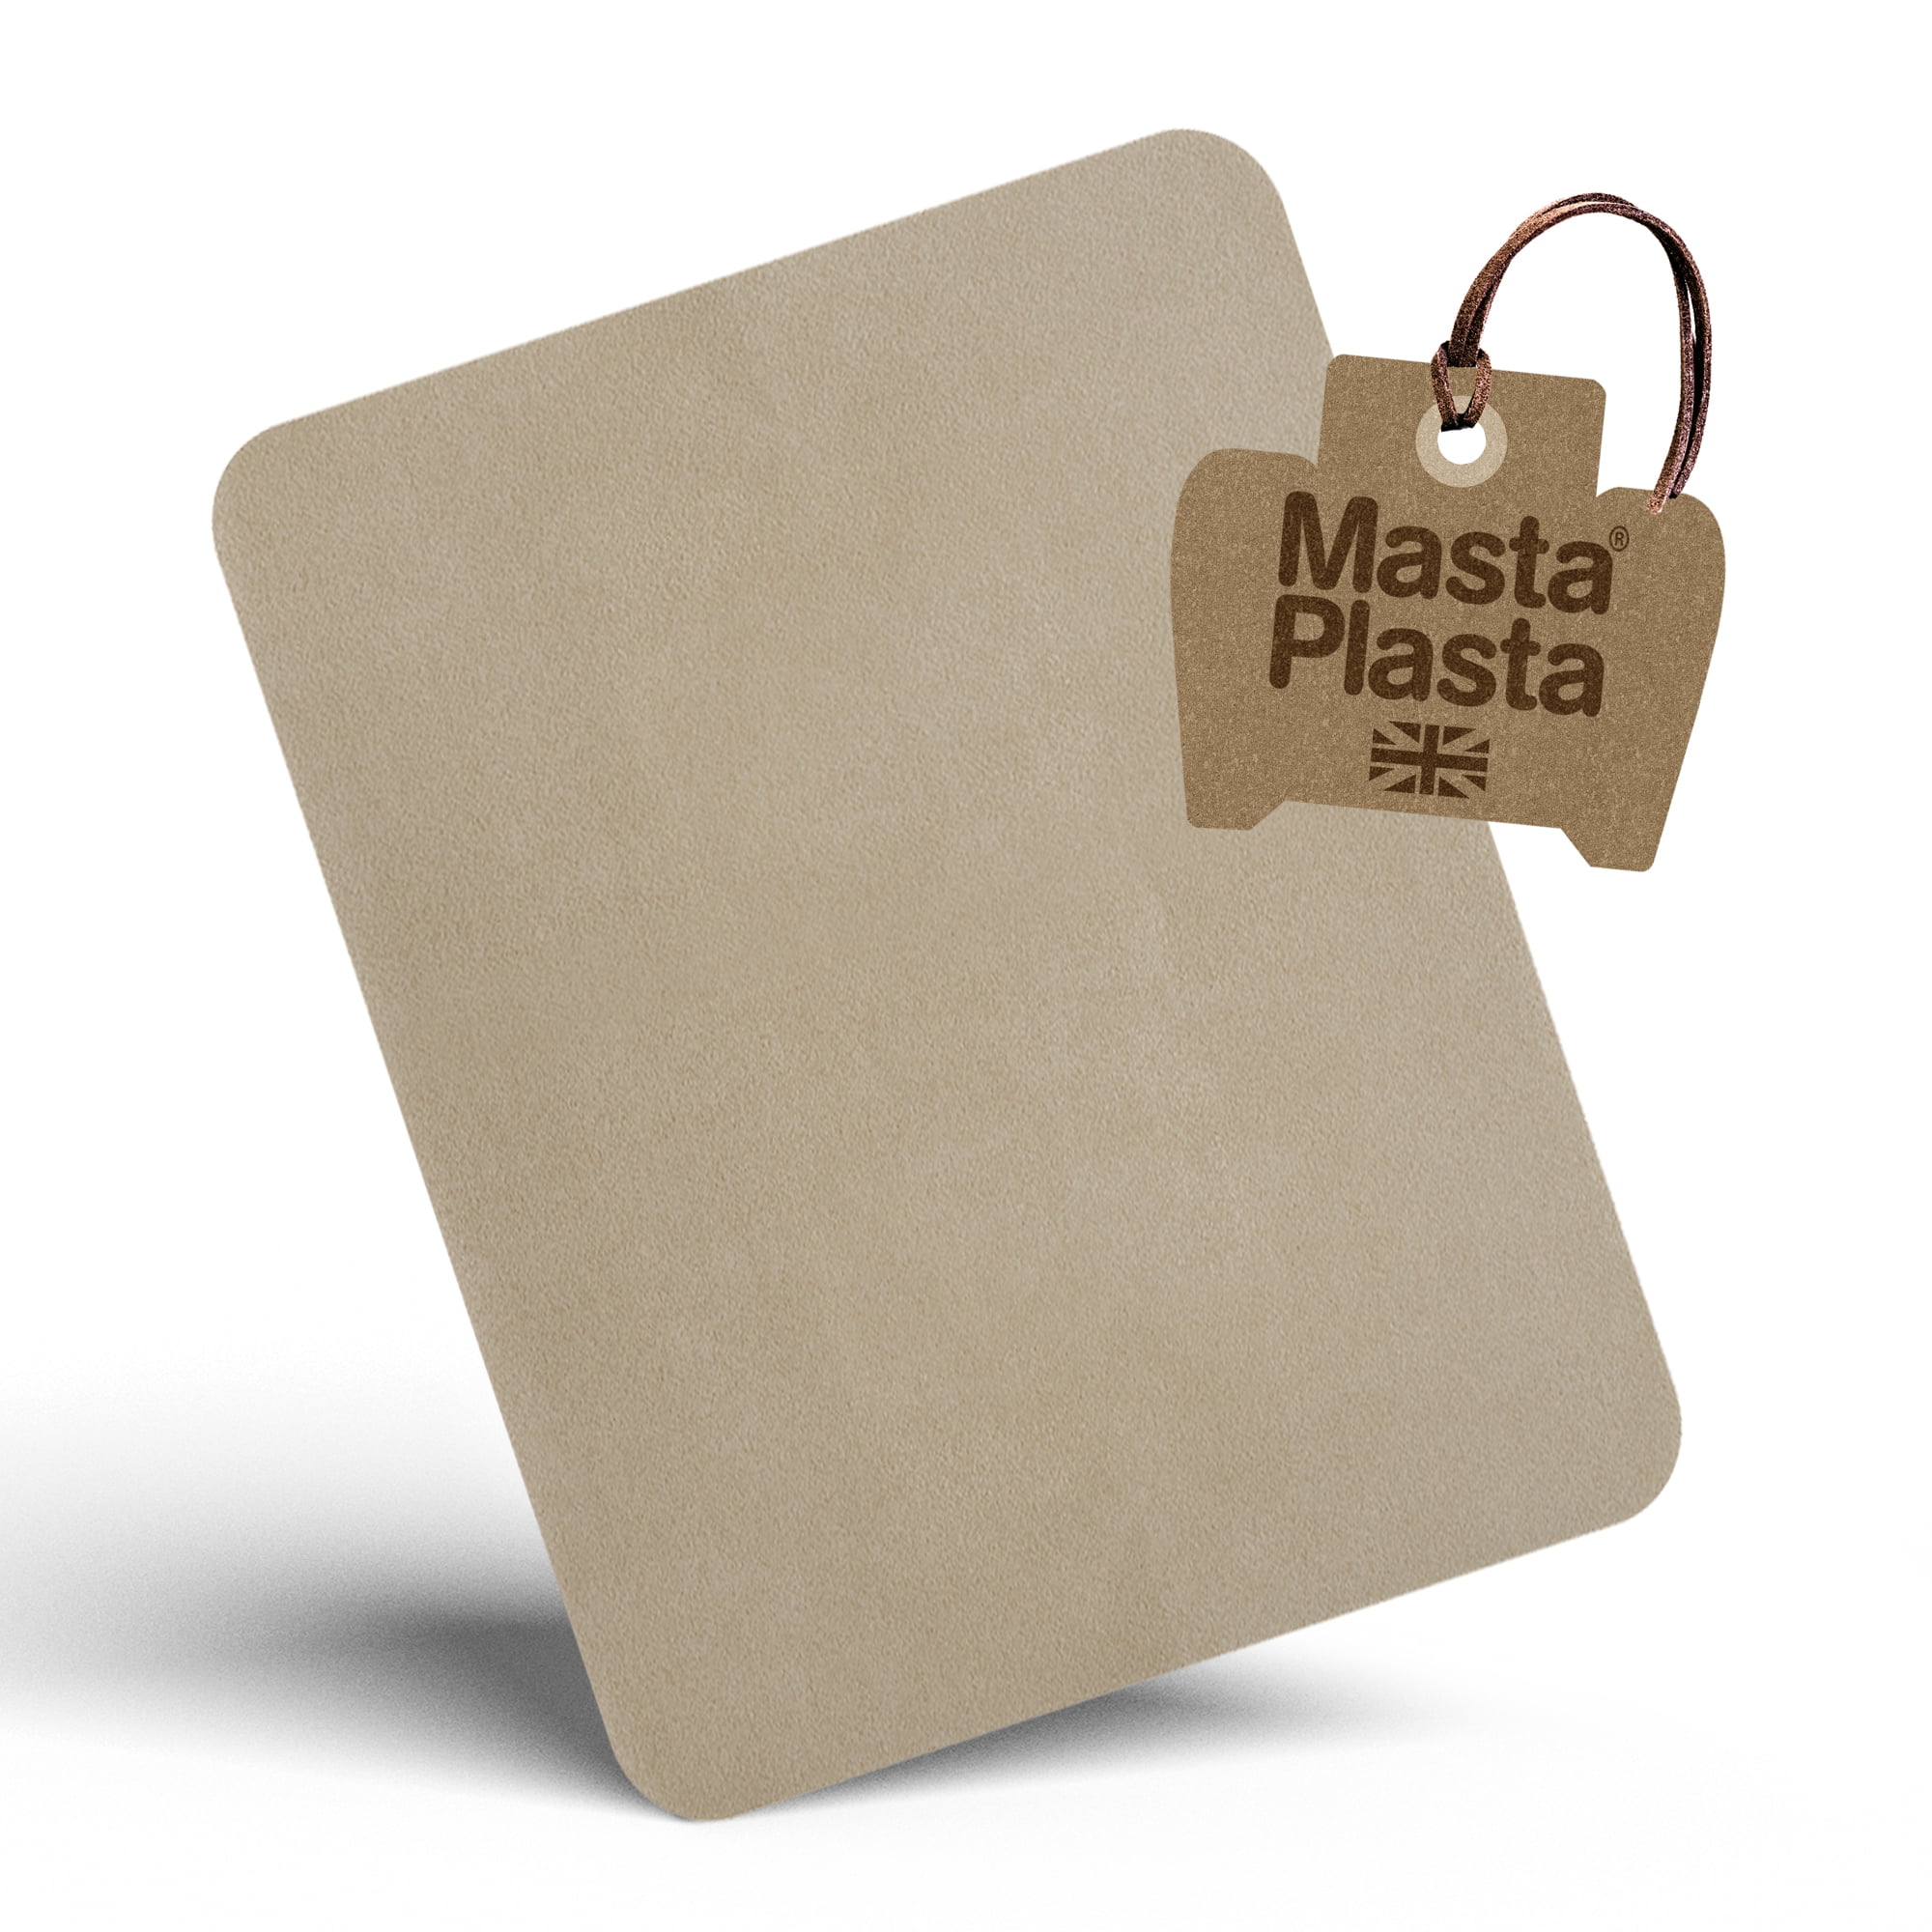 MastaPlasta Self-Adhesive Premium Leather Repair Patch, Large, Mid Brown - 8 x 4 inch